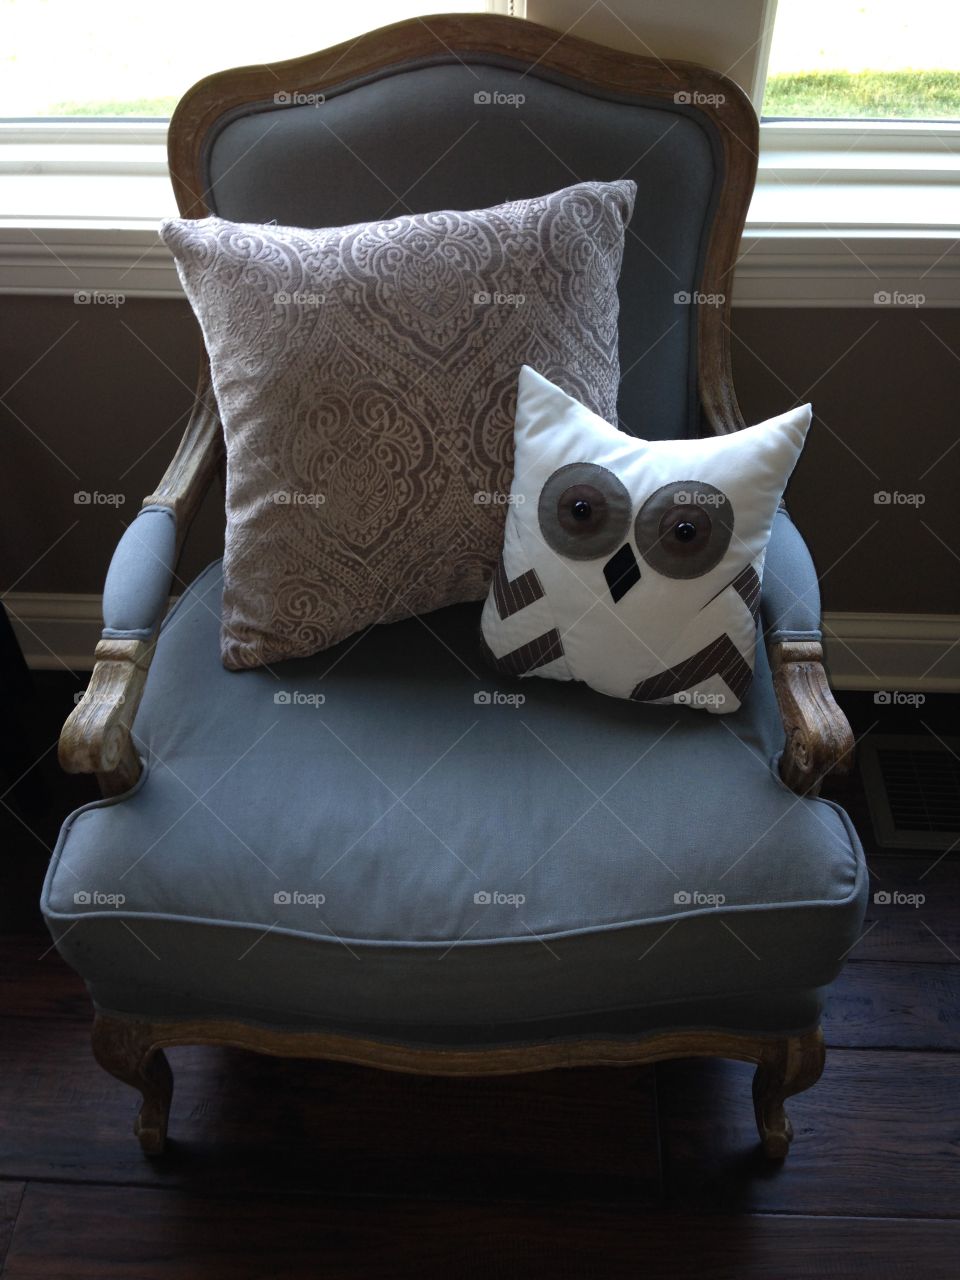 Chair, owl pillow